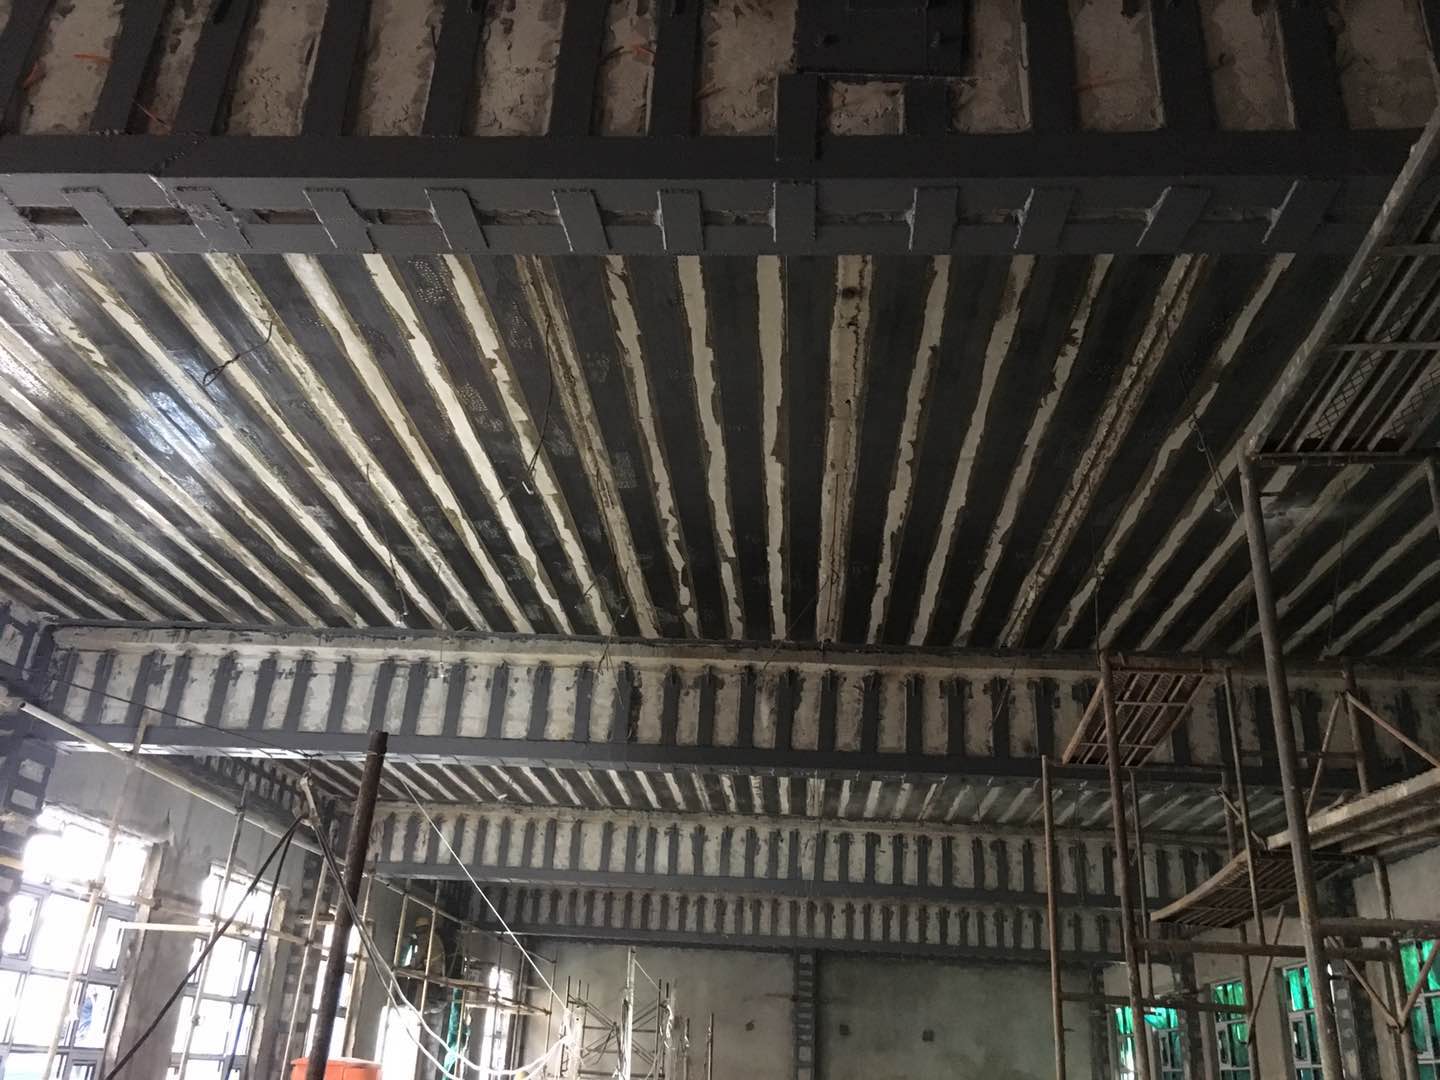 隆福大厦20#楼-楼板粘贴碳纤维加固、梁柱包钢加固